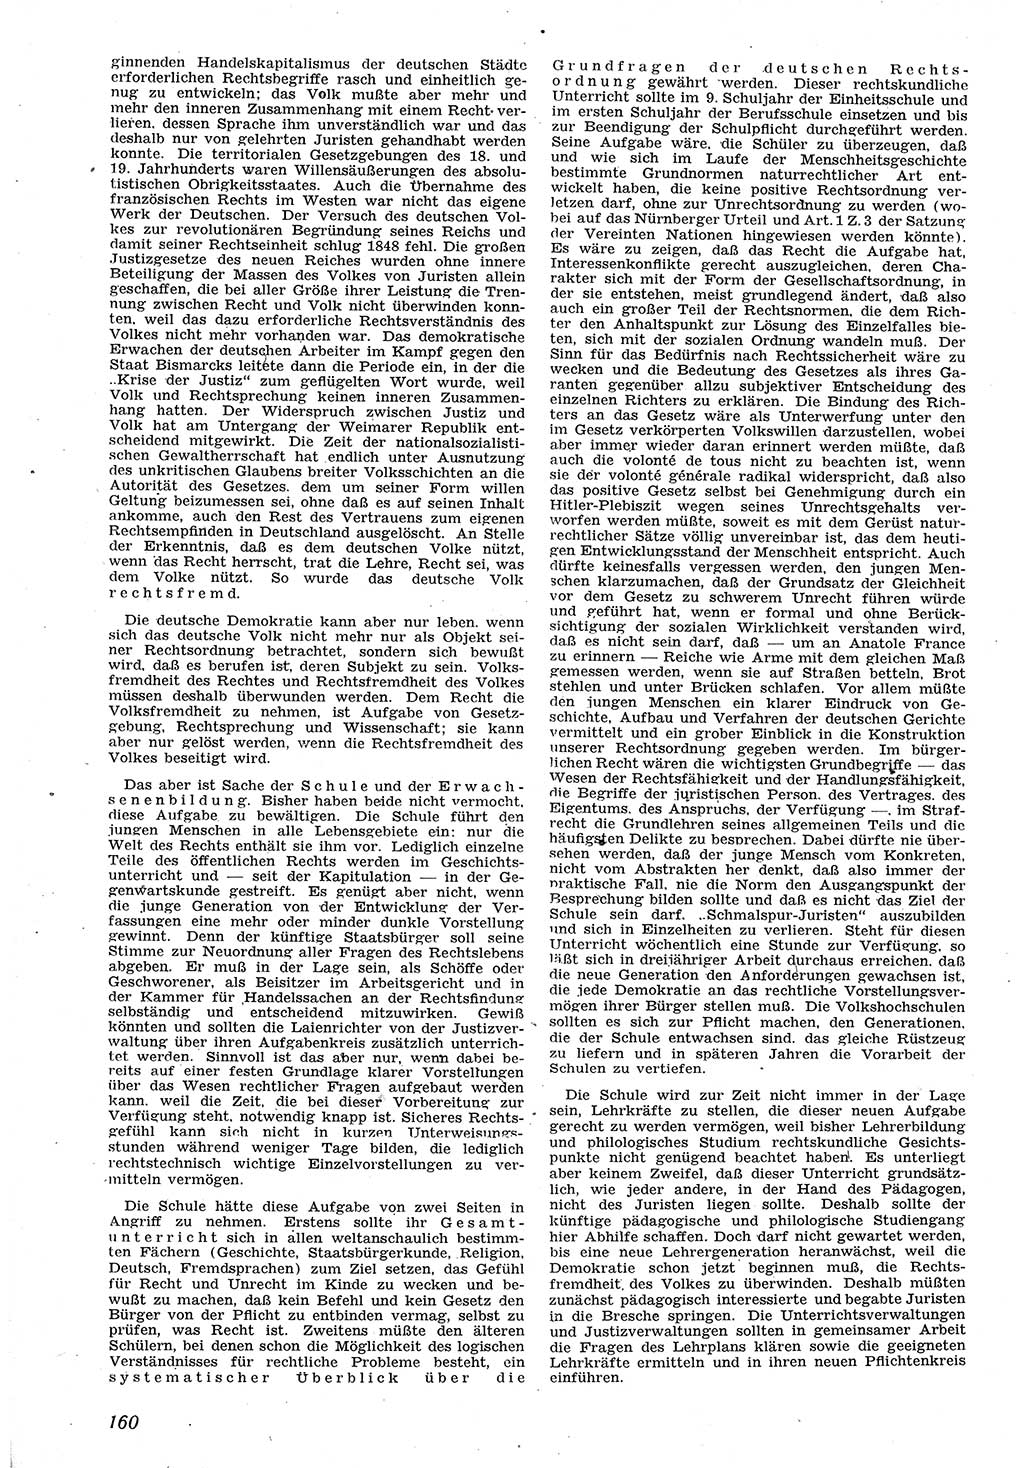 Neue Justiz (NJ), Zeitschrift für Recht und Rechtswissenschaft [Sowjetische Besatzungszone (SBZ) Deutschland], 1. Jahrgang 1947, Seite 160 (NJ SBZ Dtl. 1947, S. 160)